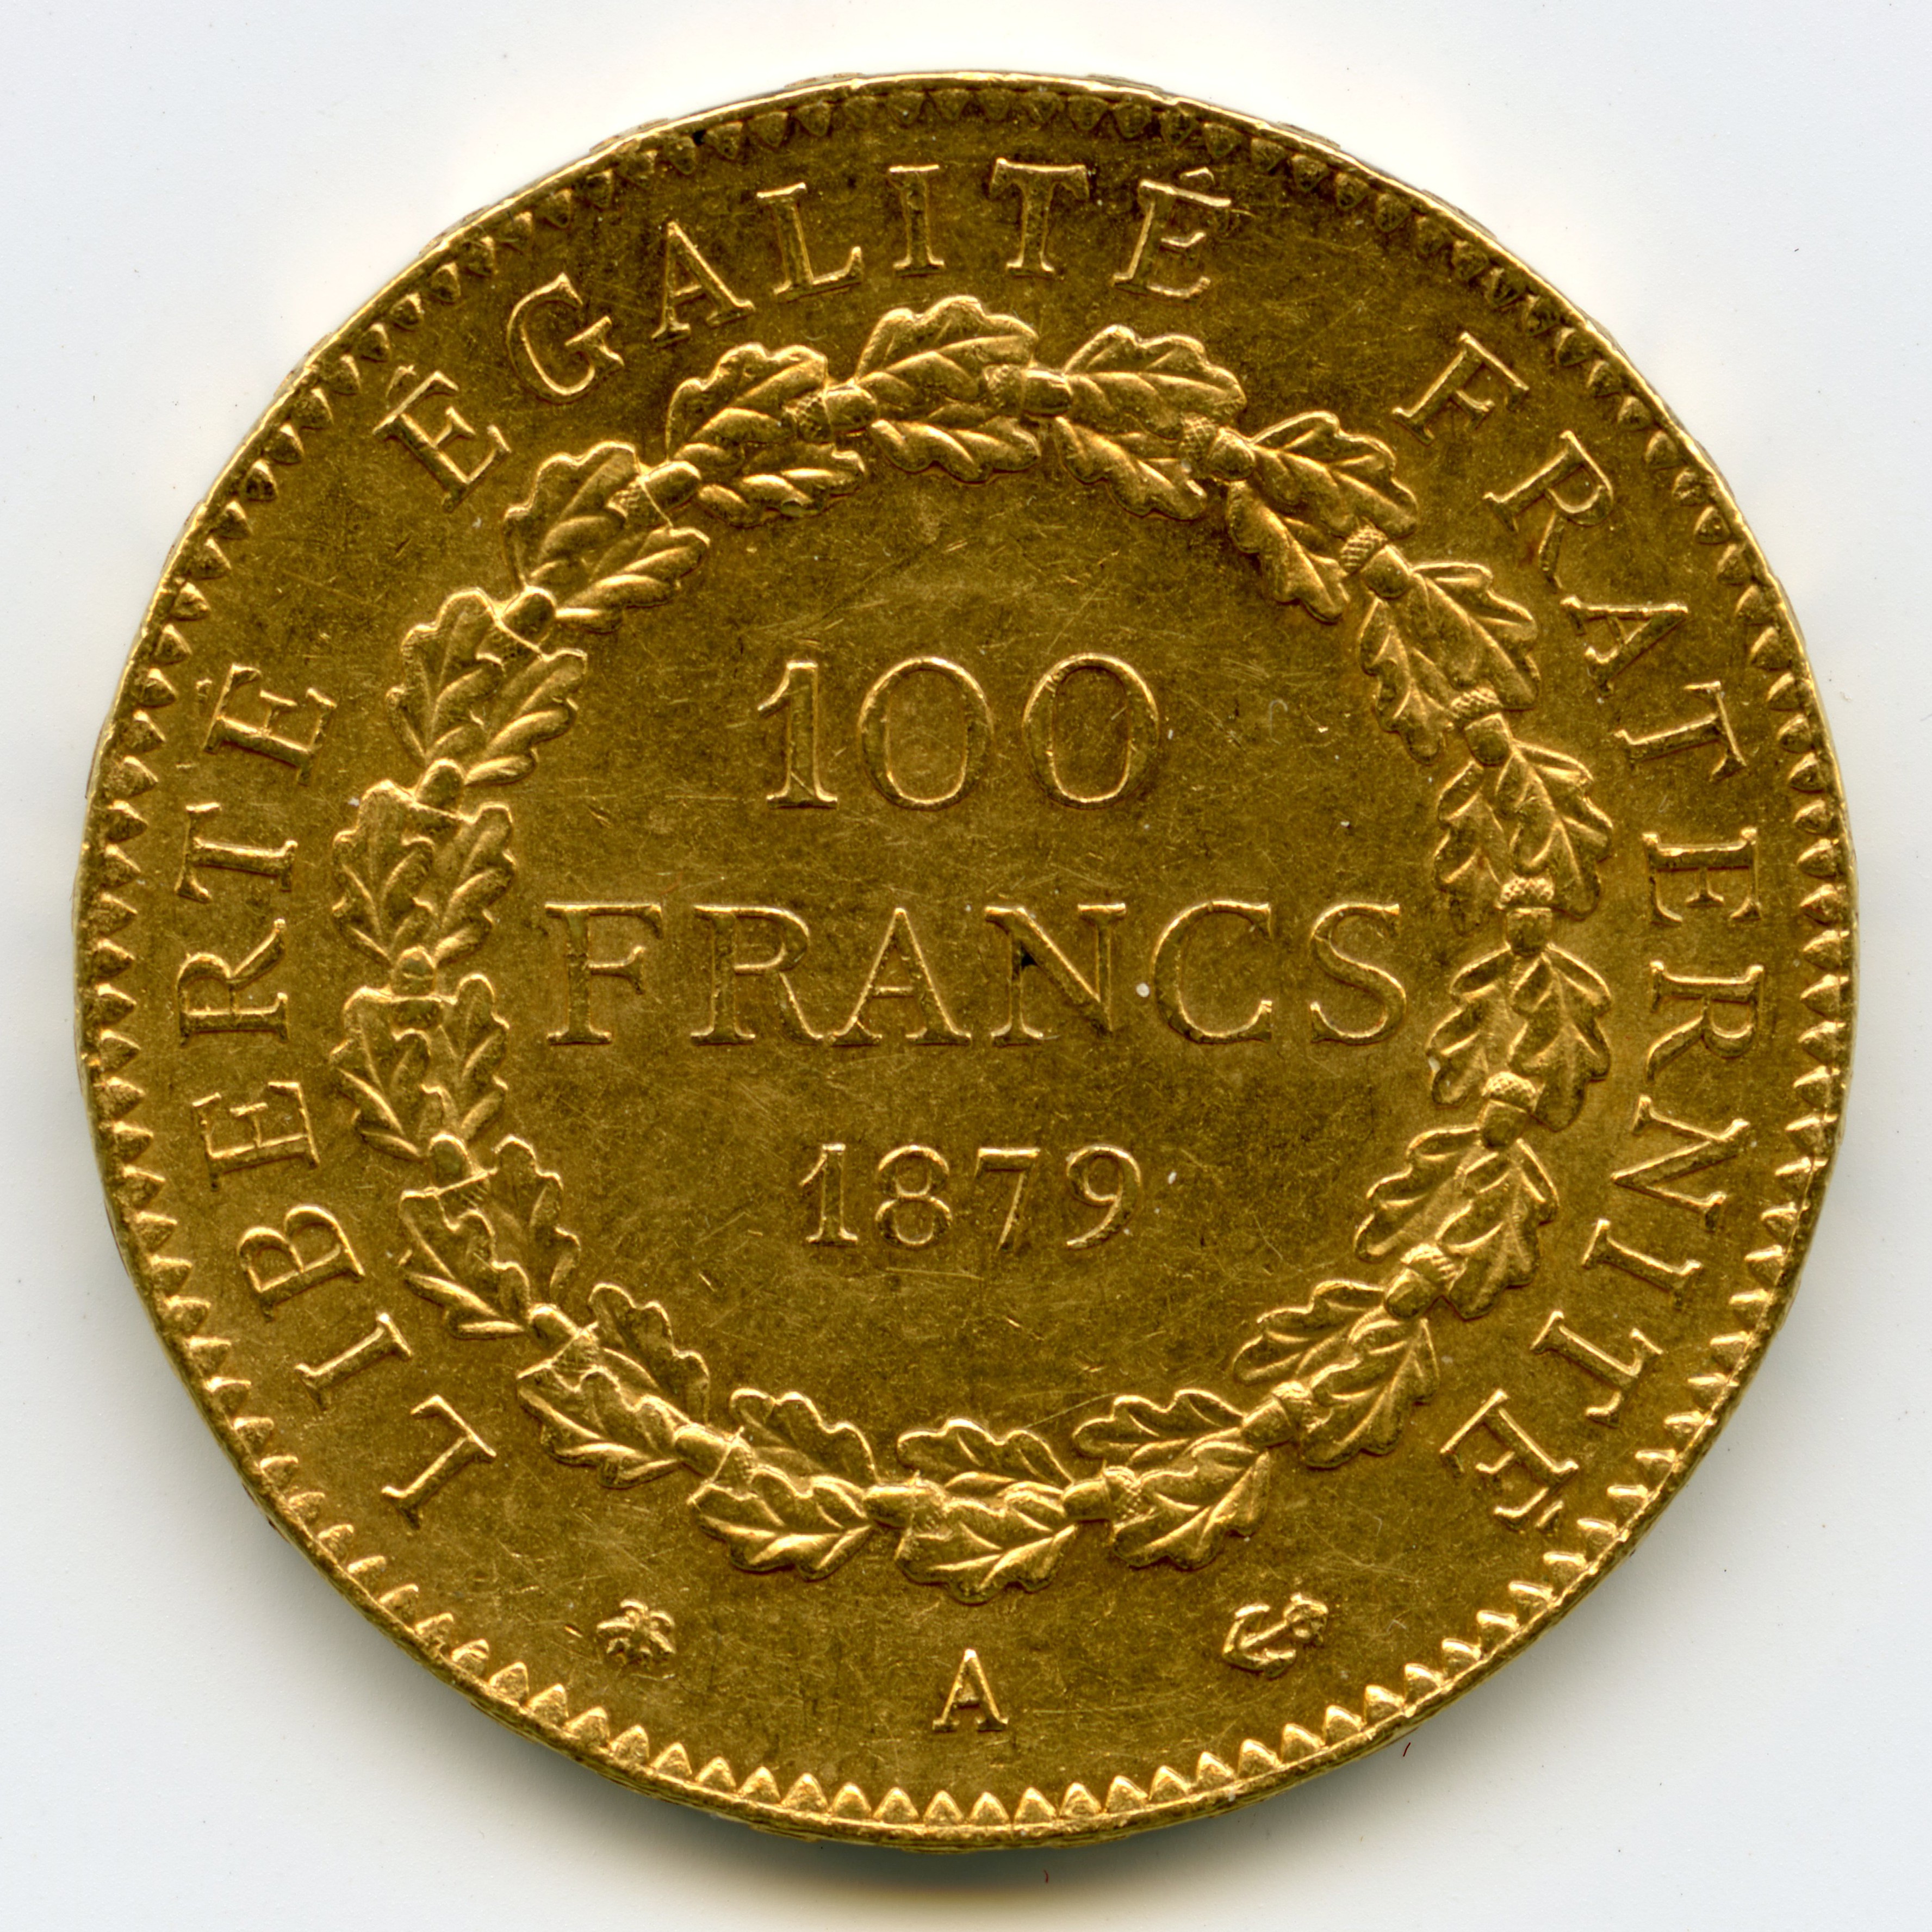 100 Francs Génie - 1879 - Paris revers